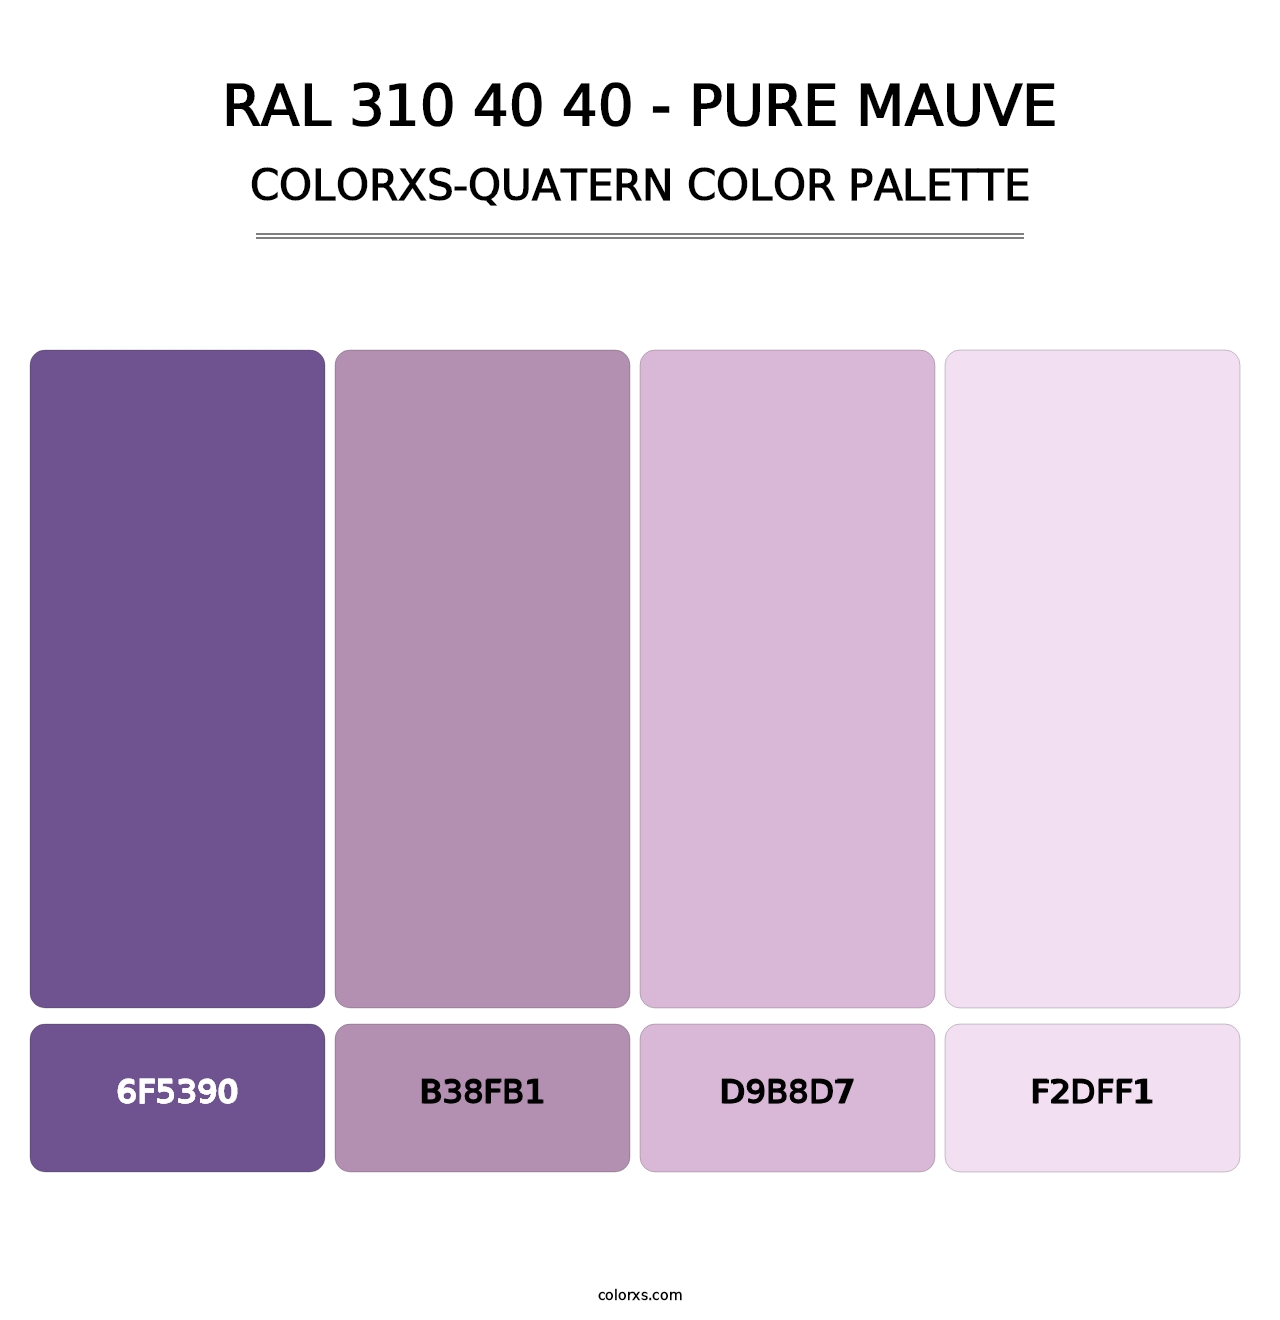 RAL 310 40 40 - Pure Mauve - Colorxs Quatern Palette